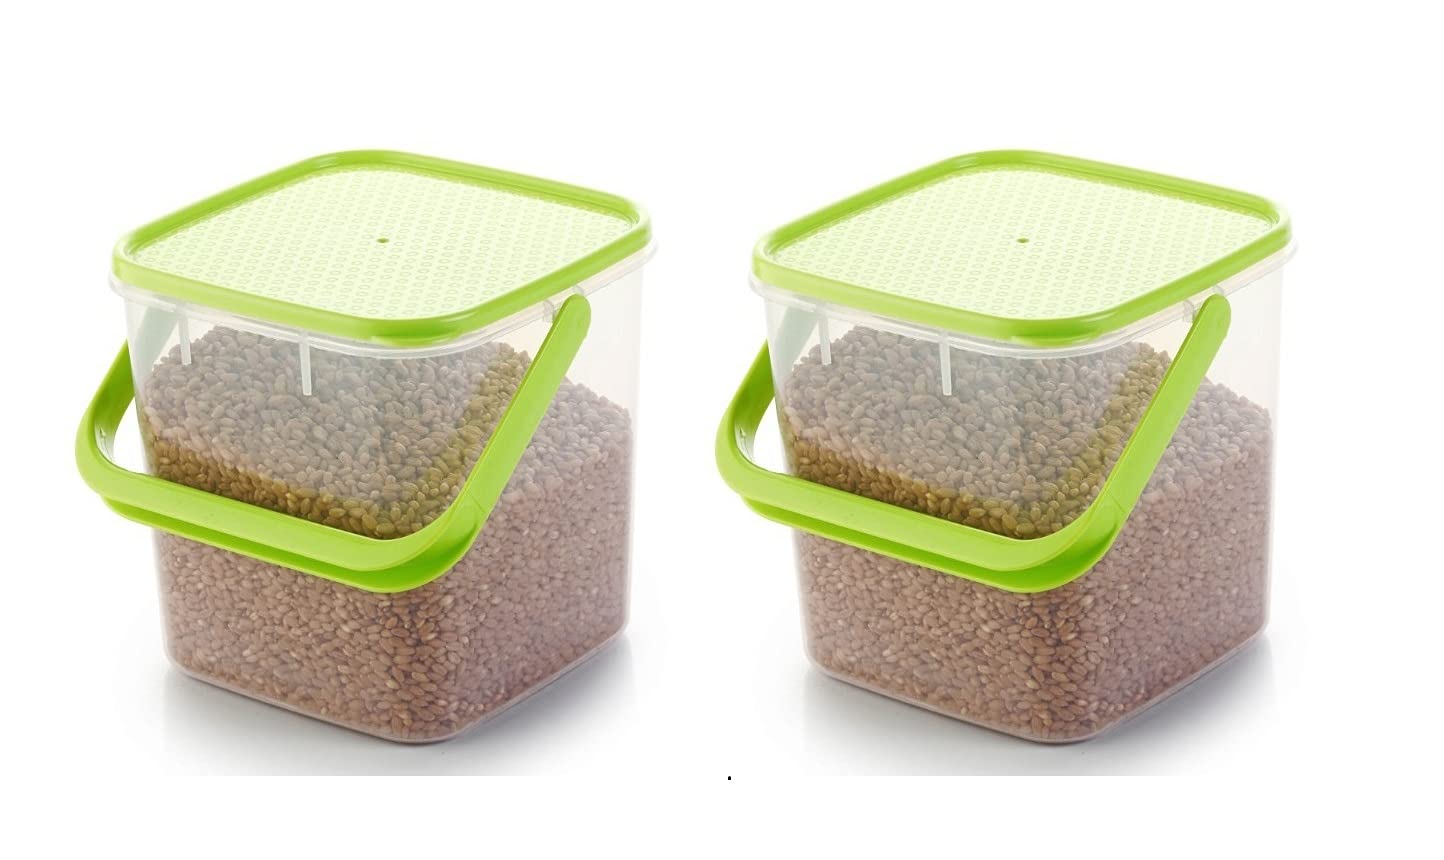 Machak Plastic Storage Basket For Kitchen & Clothes, Organizer With Handle, Green